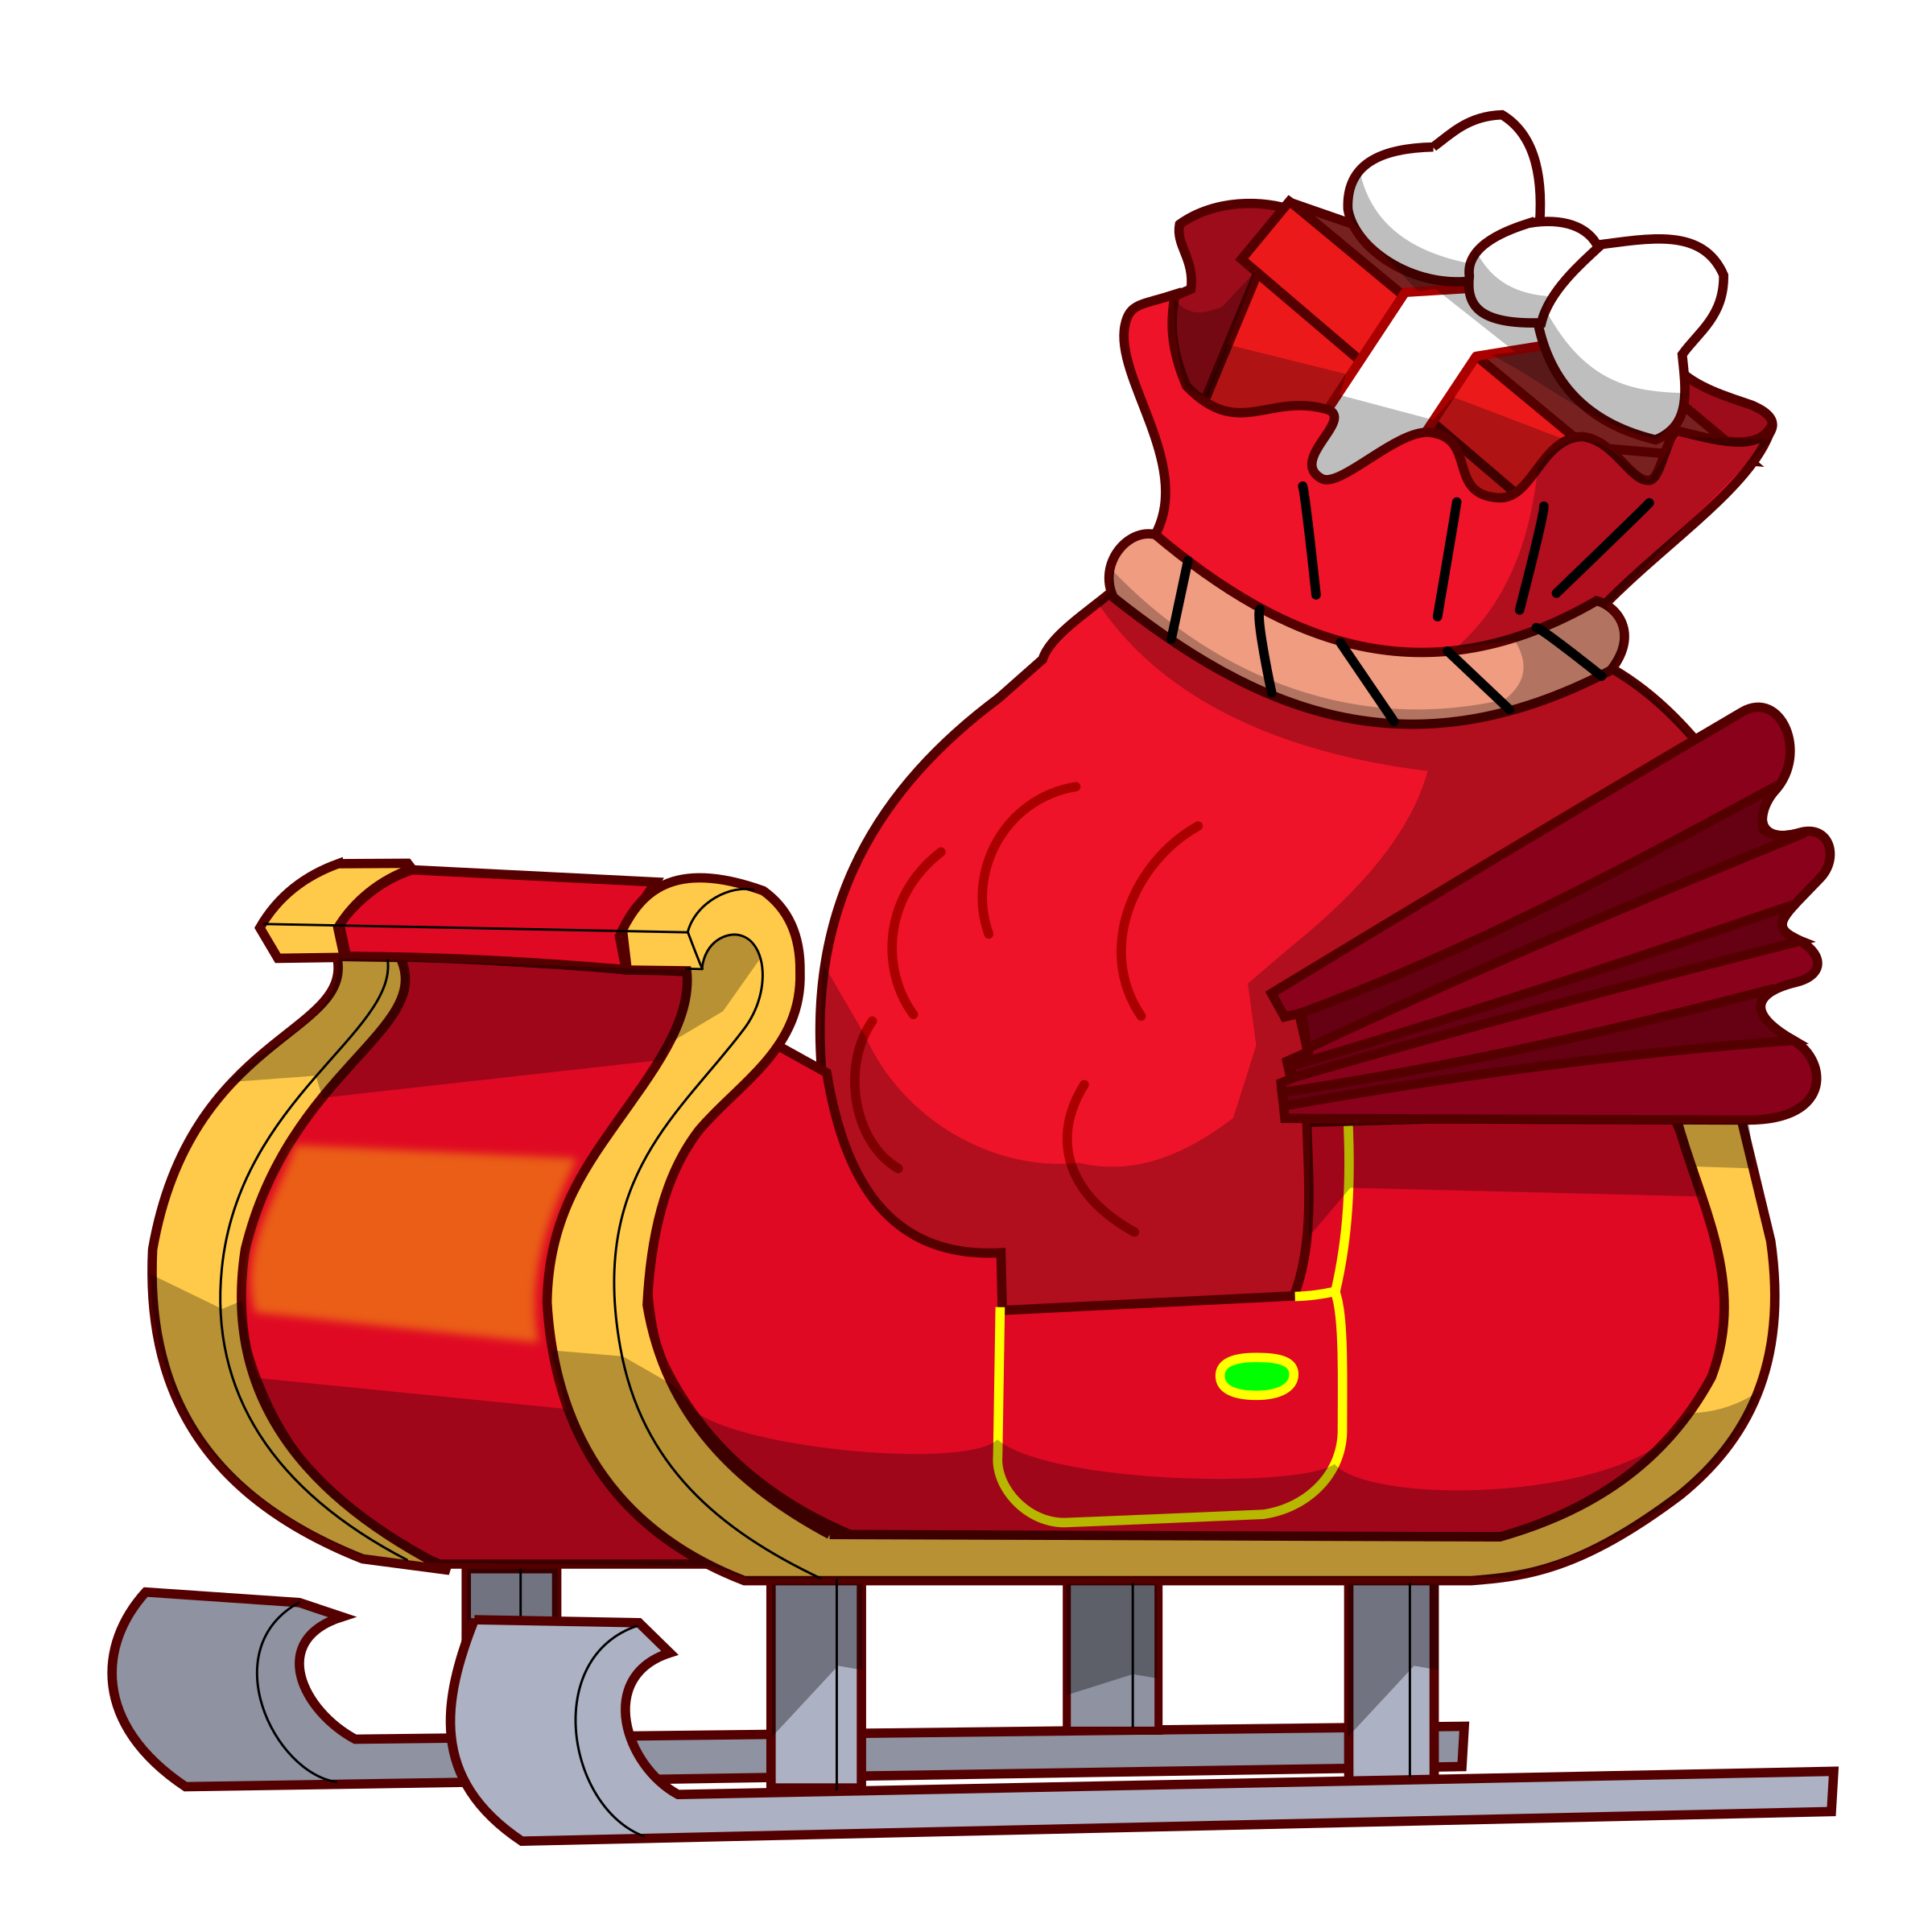 Santa claus in sleigh clipart - ClipartFox